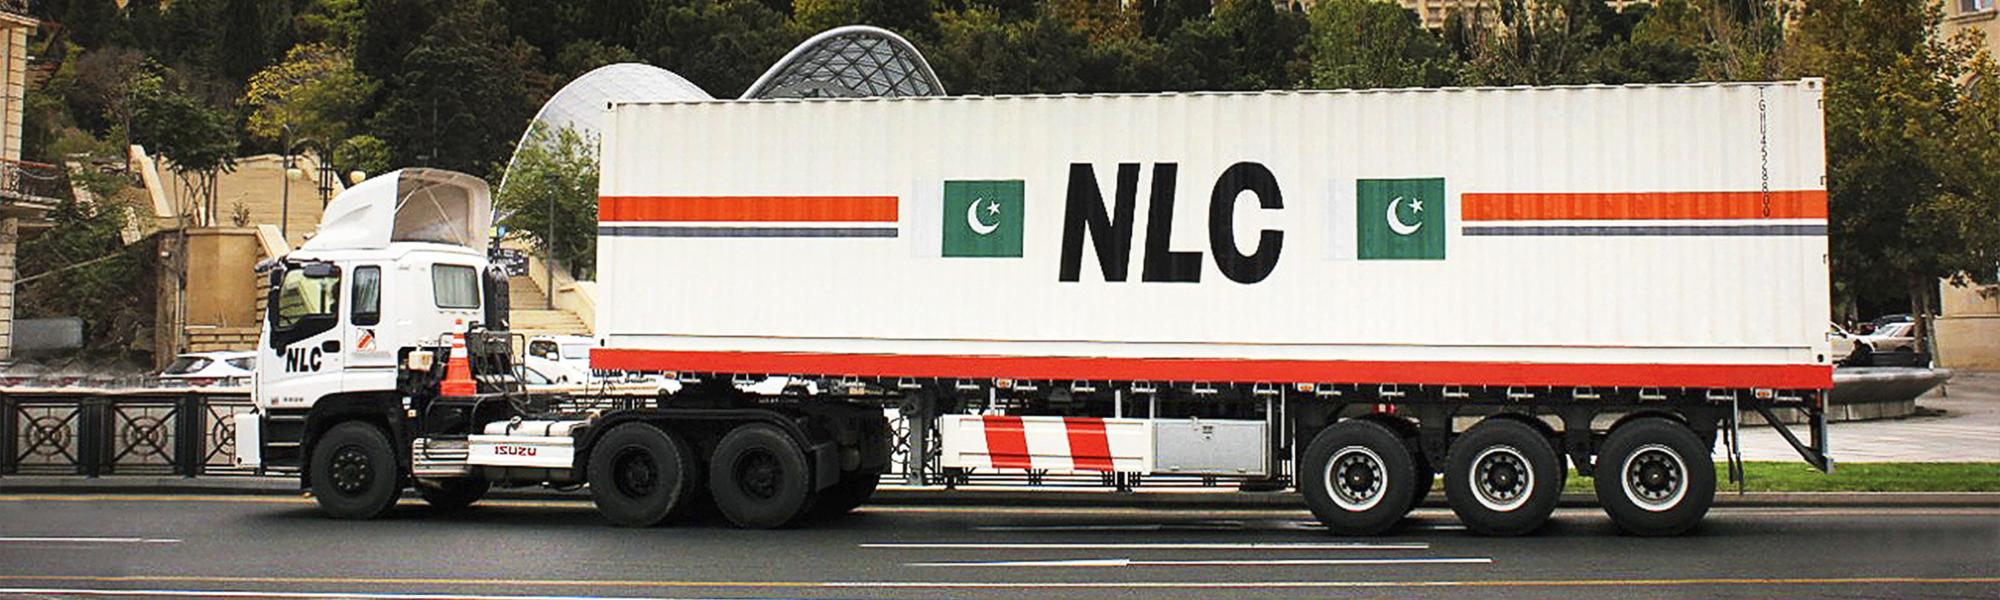 IRU и NLC обсудили планы по развитию торговли и транспорта в Пакистане